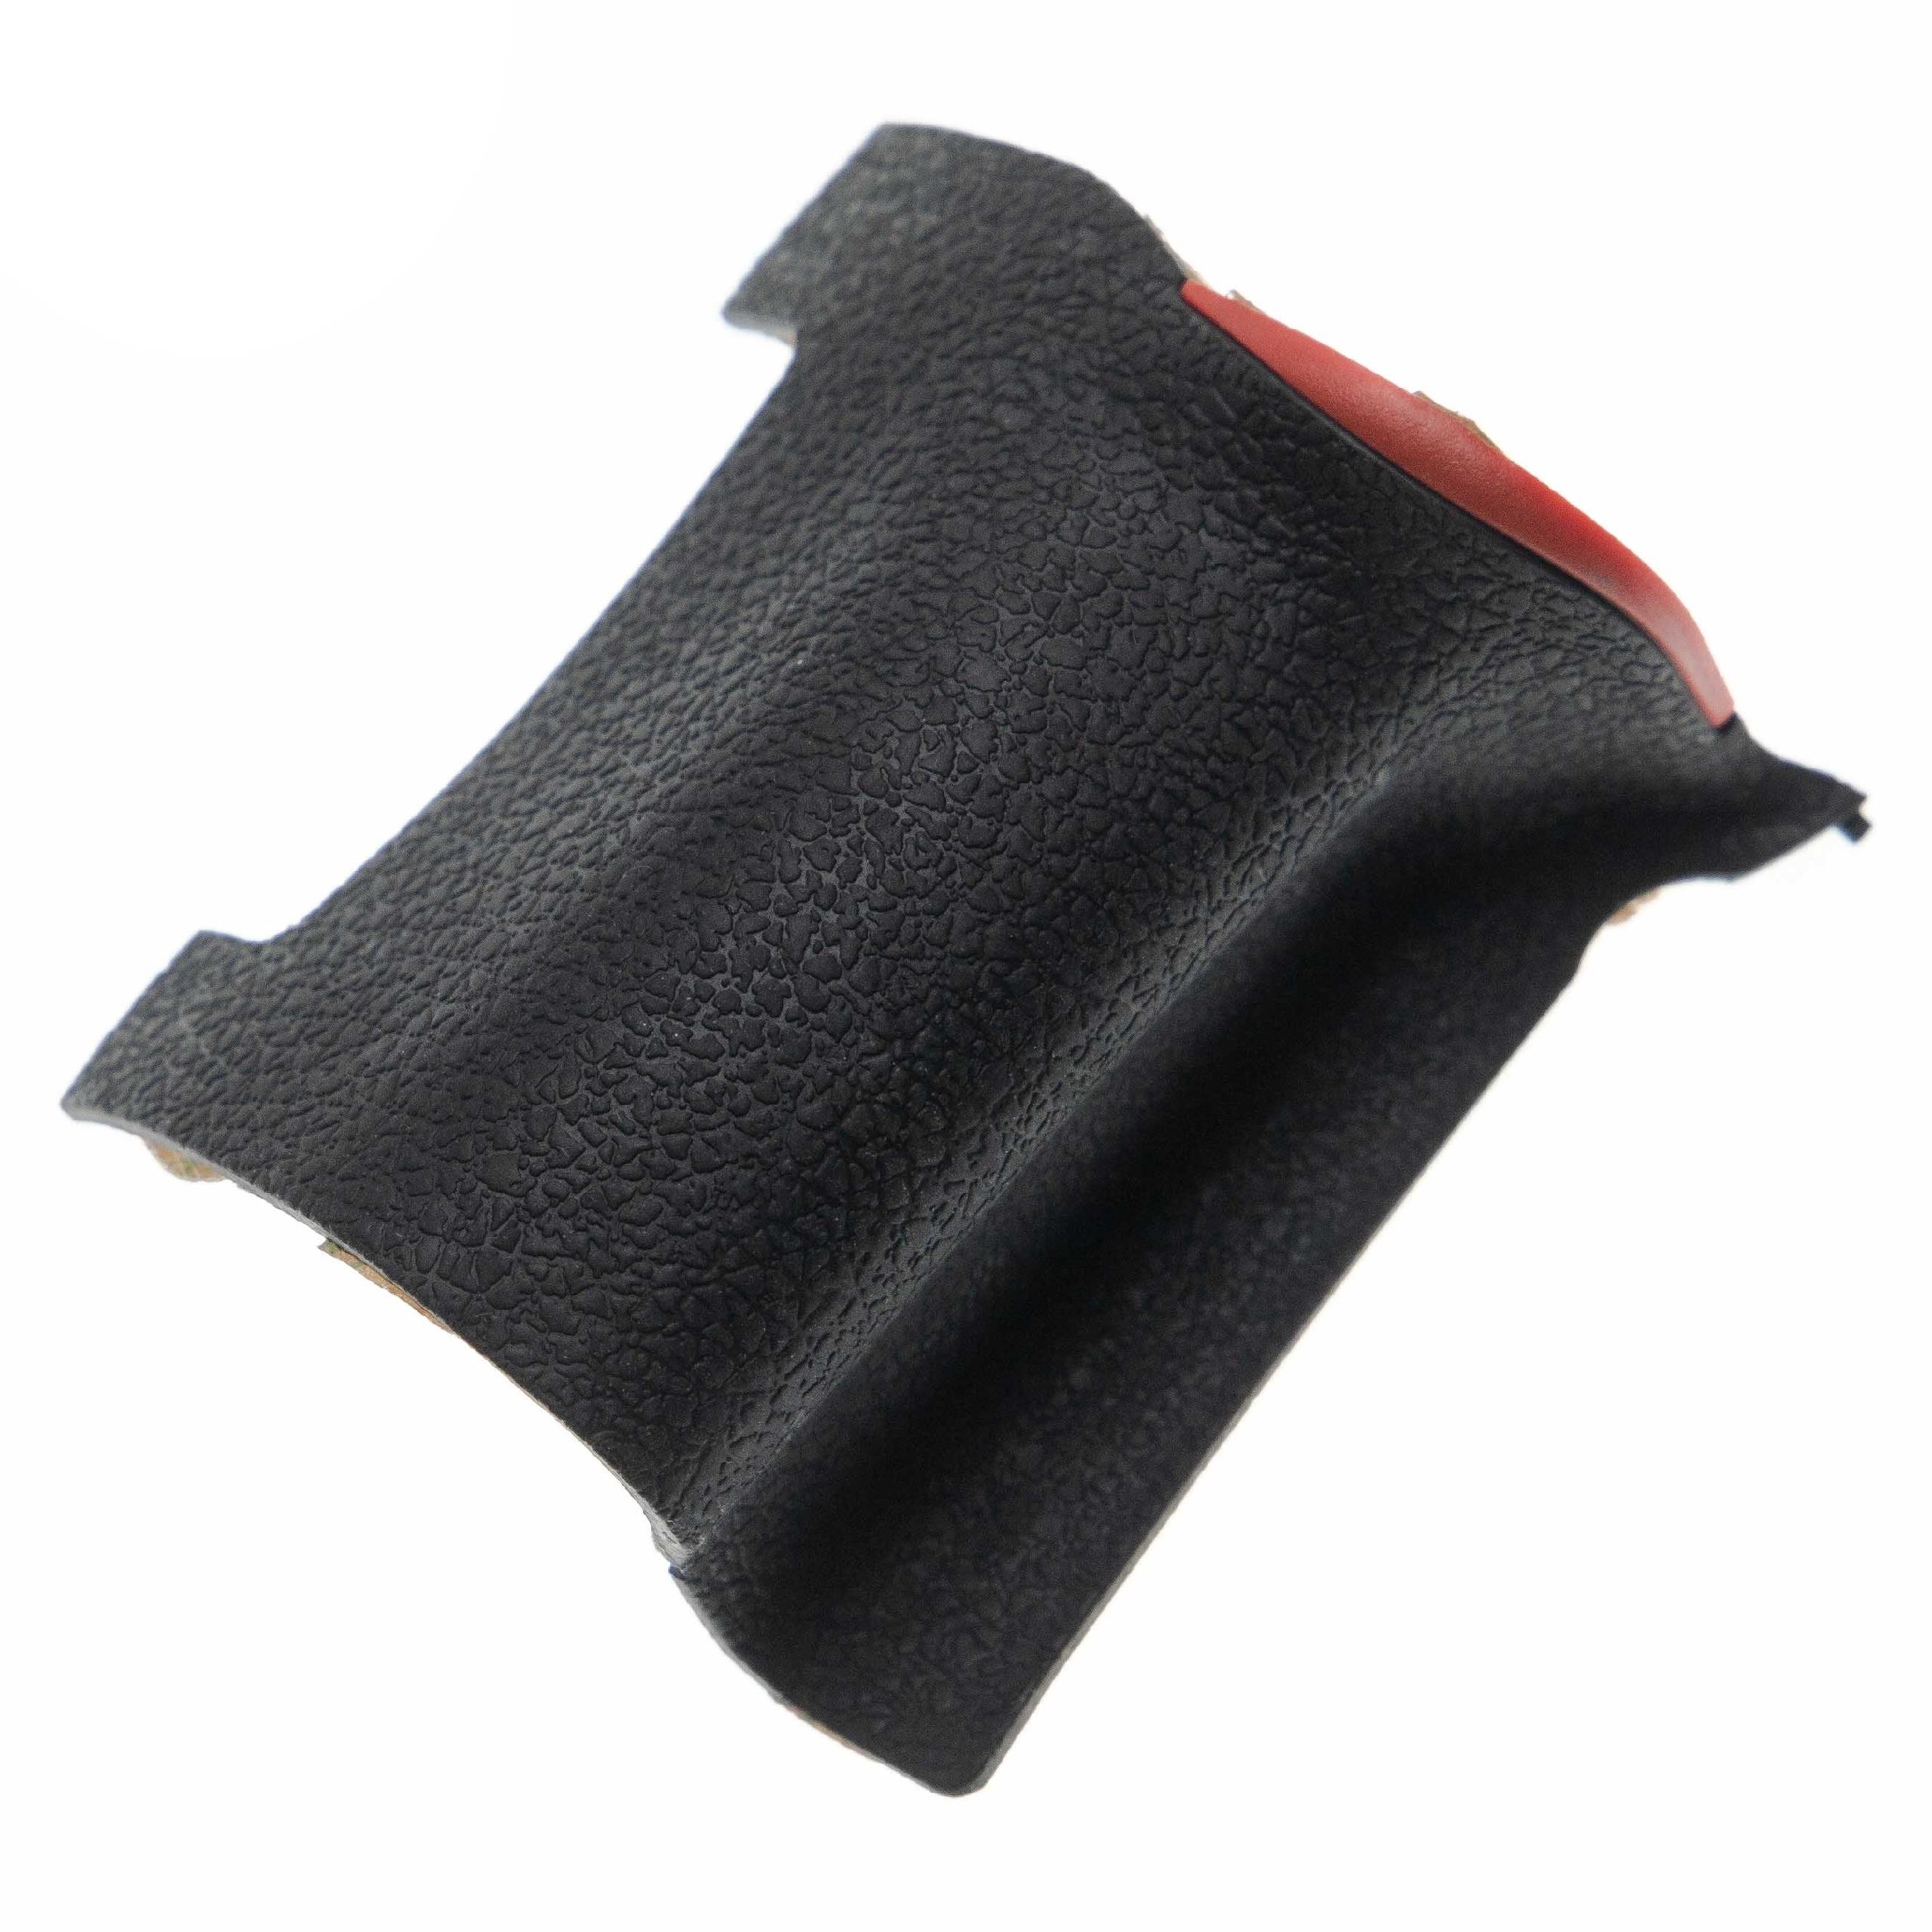 Empuñadura de goma de repuesto para cámara Nikon D750 - para la parte frontal, autoadhesiva, negro / rojo